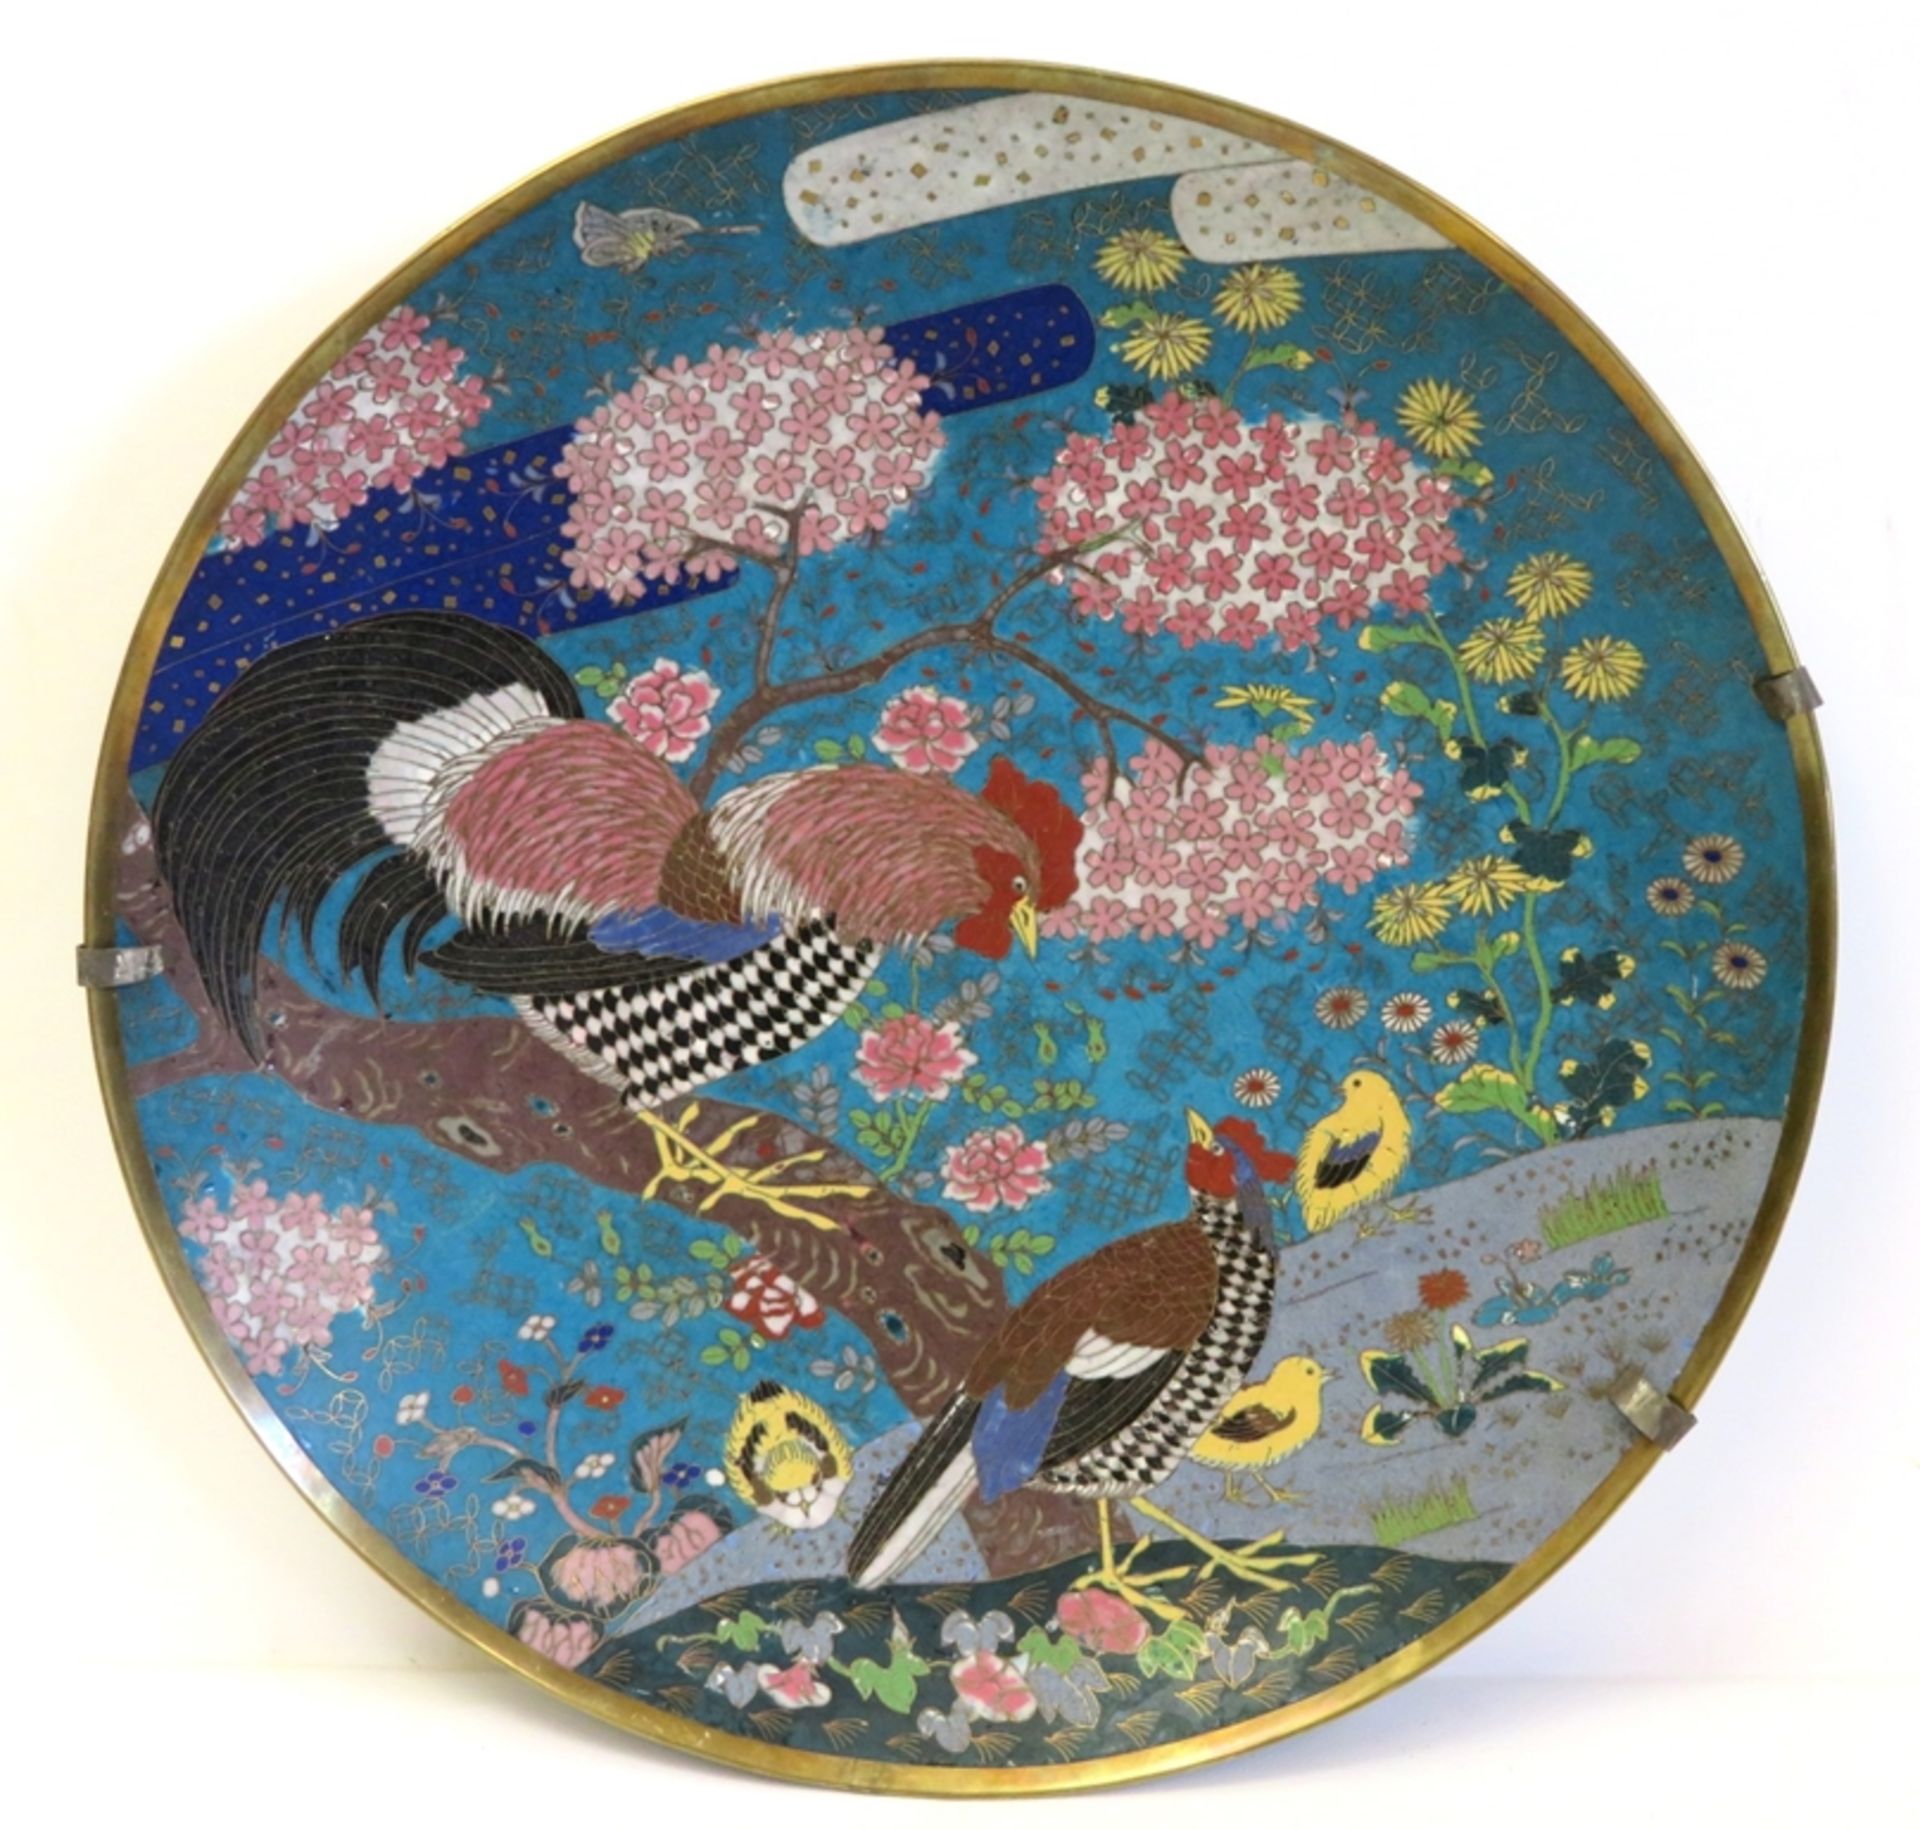 Großer Cloisonné Teller, Japan, 19. Jahrhundert, farbiger Zellenschmelz mit Dekor von Hahn und Henn